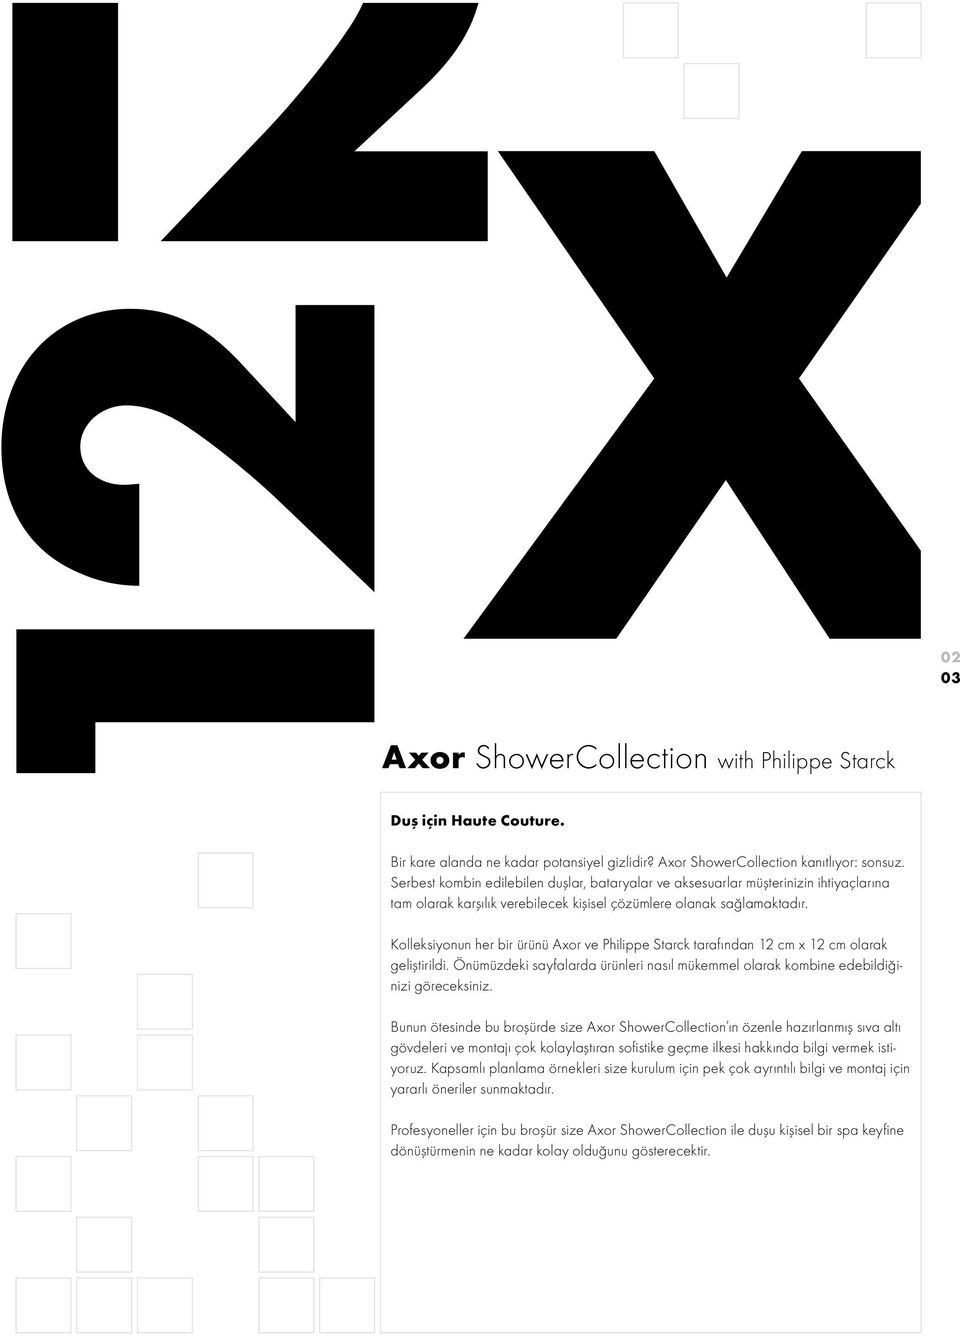 02 03 Kolleksiyonun her bir ürünü Axor ve Philippe Starck tarafından 12 cm x 12 cm olarak geliştirildi. Önümüzdeki sayfalarda ürünleri nasıl mükemmel olarak kombine edebildiğinizi göreceksiniz.